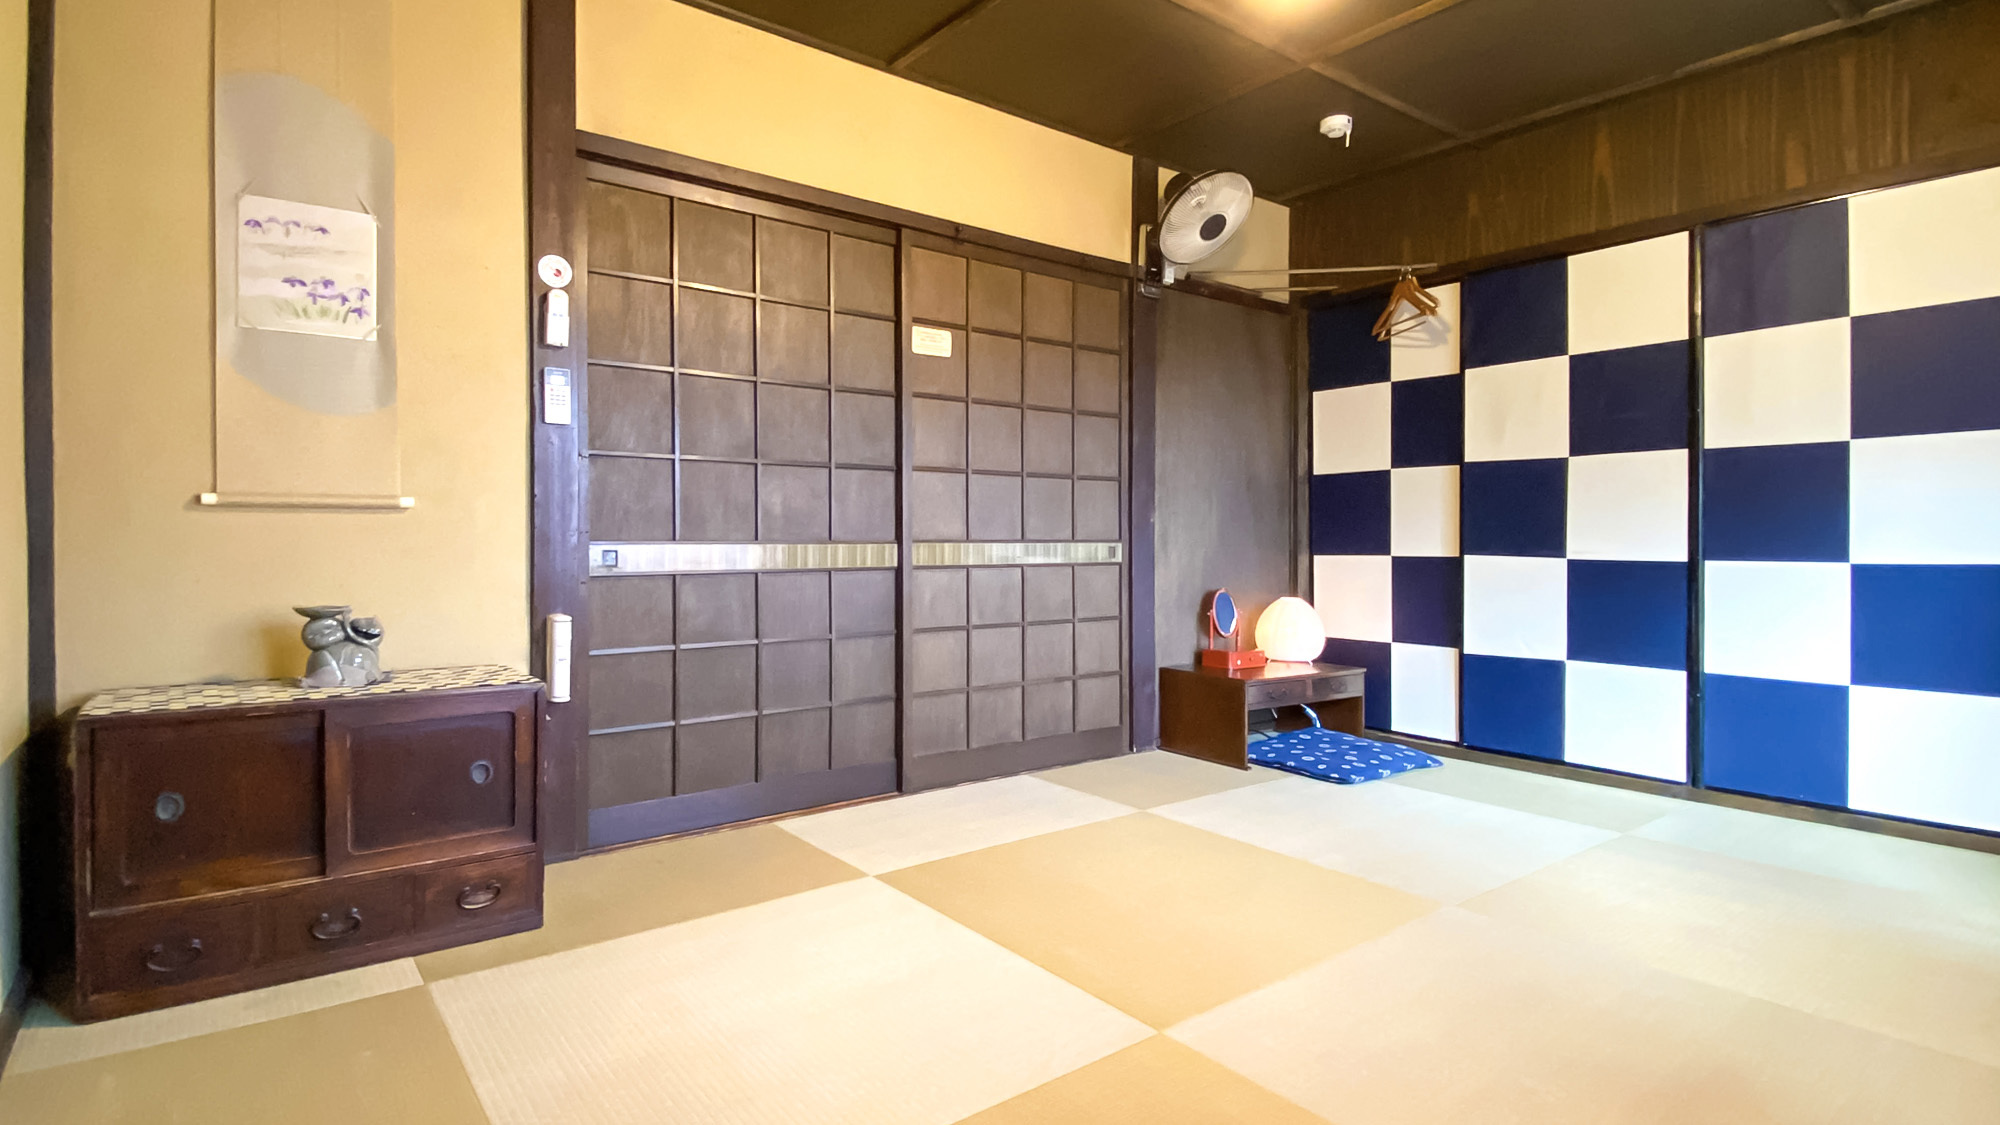 ・【市松】大きな市松模様の襖と琉球畳が印象的なプライベートルーム